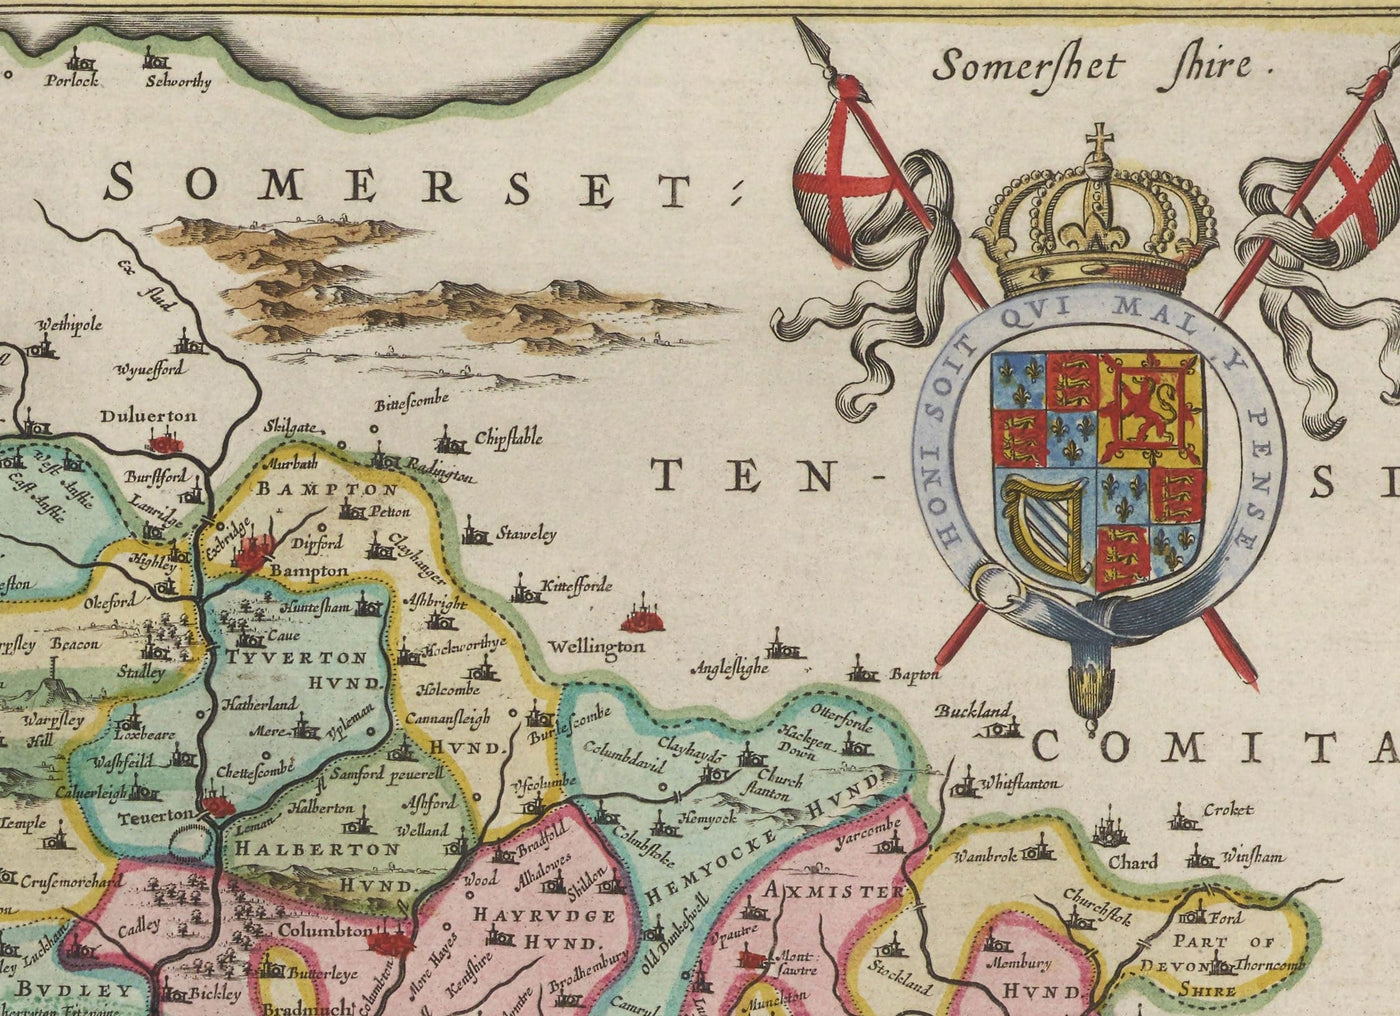 Ancienne carte de Devon en 1665 par Joan Blaaeu - Plymouth, Exeter, Torquay, Paignton, Exmouth, Barnstaple, Pays Ouest